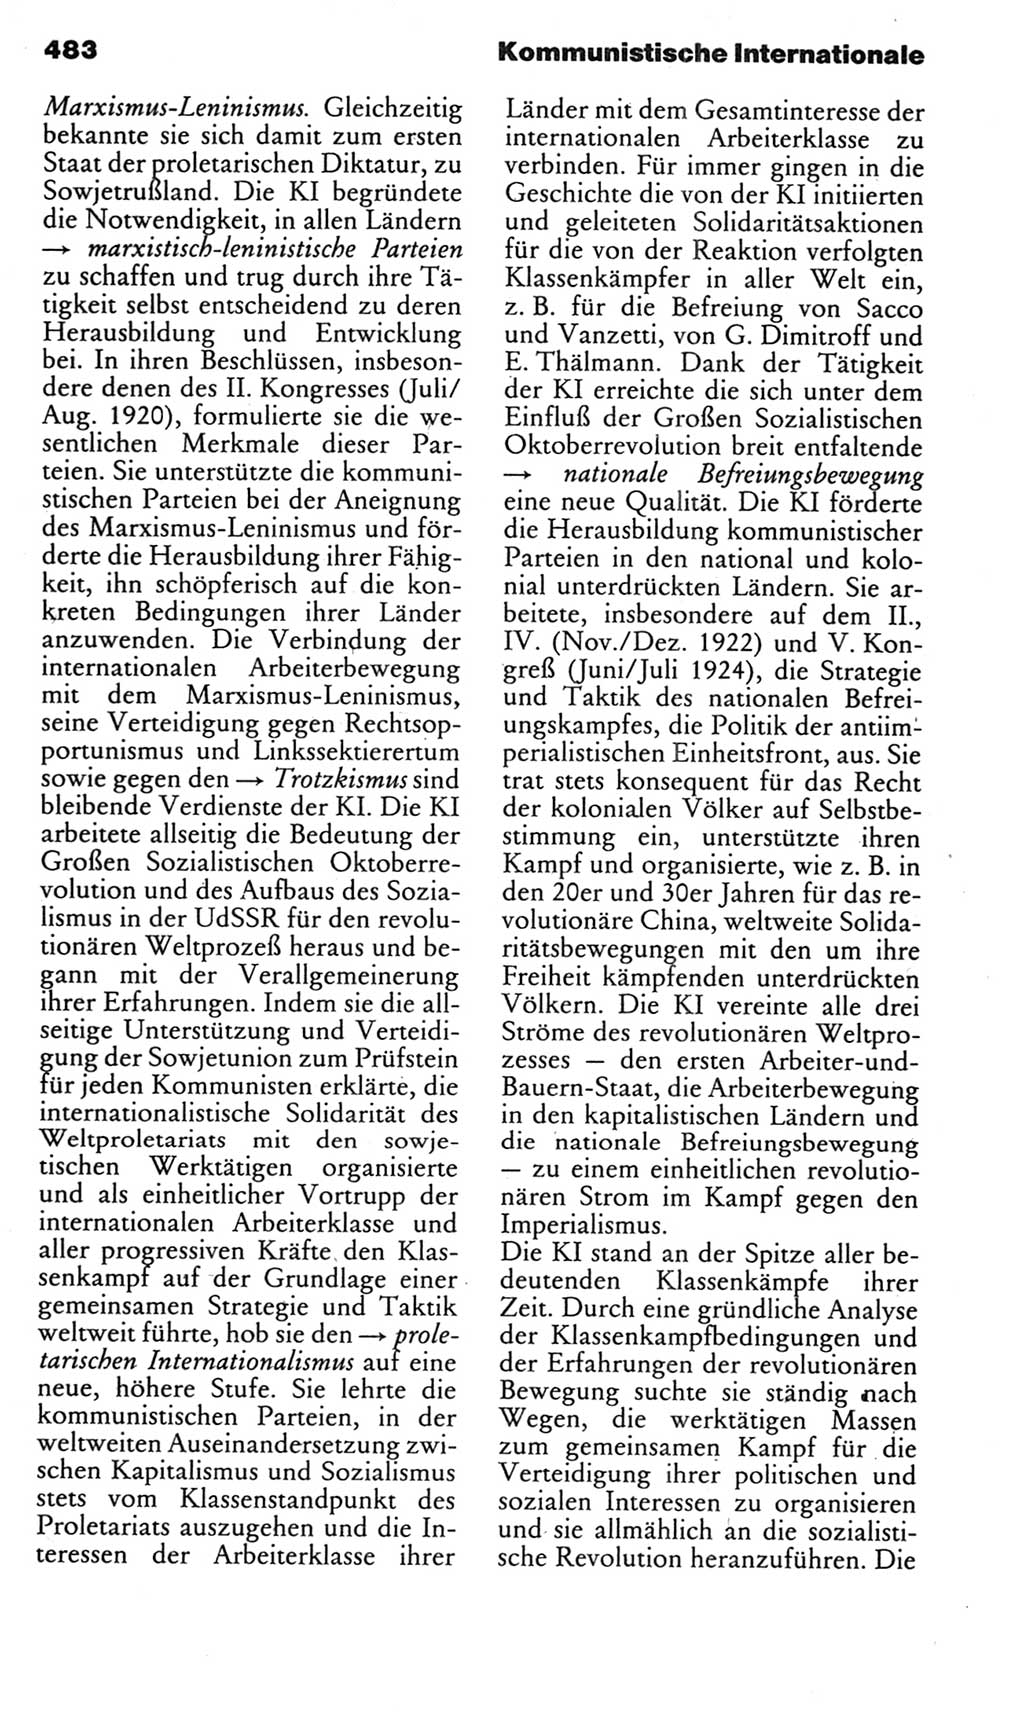 Kleines politisches Wörterbuch [Deutsche Demokratische Republik (DDR)] 1985, Seite 483 (Kl. pol. Wb. DDR 1985, S. 483)